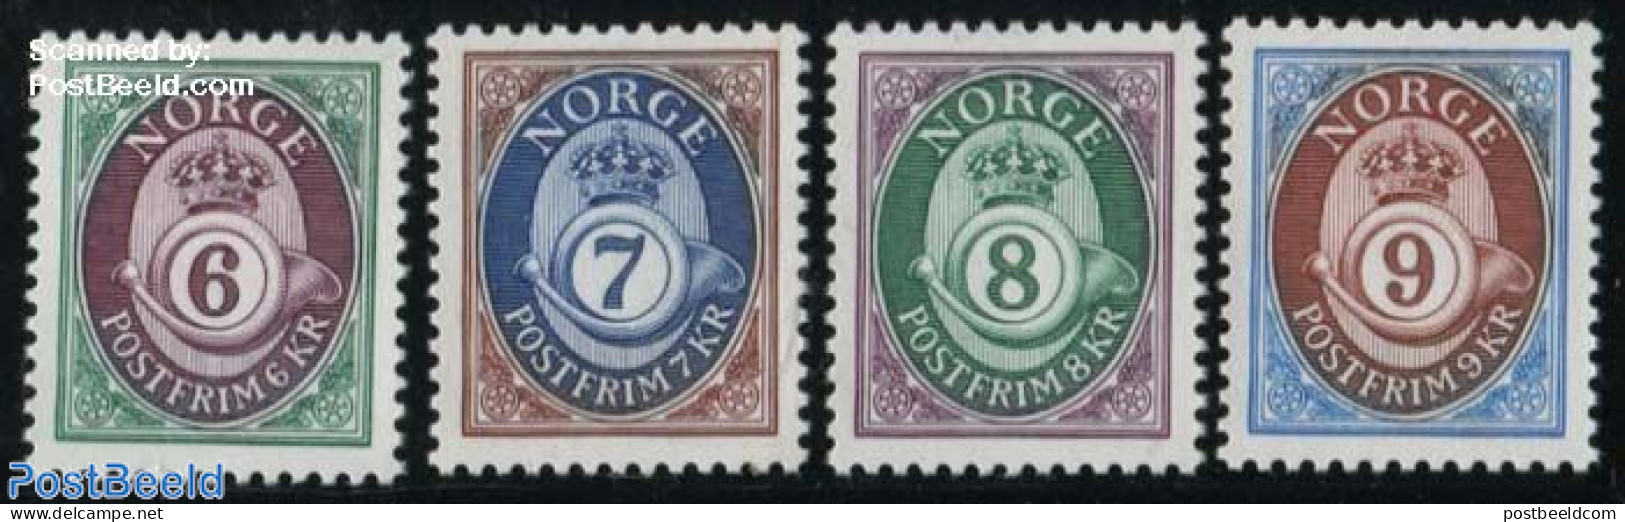 Norway 1991 Definitives 4v, Phosphor, Mint NH - Unused Stamps